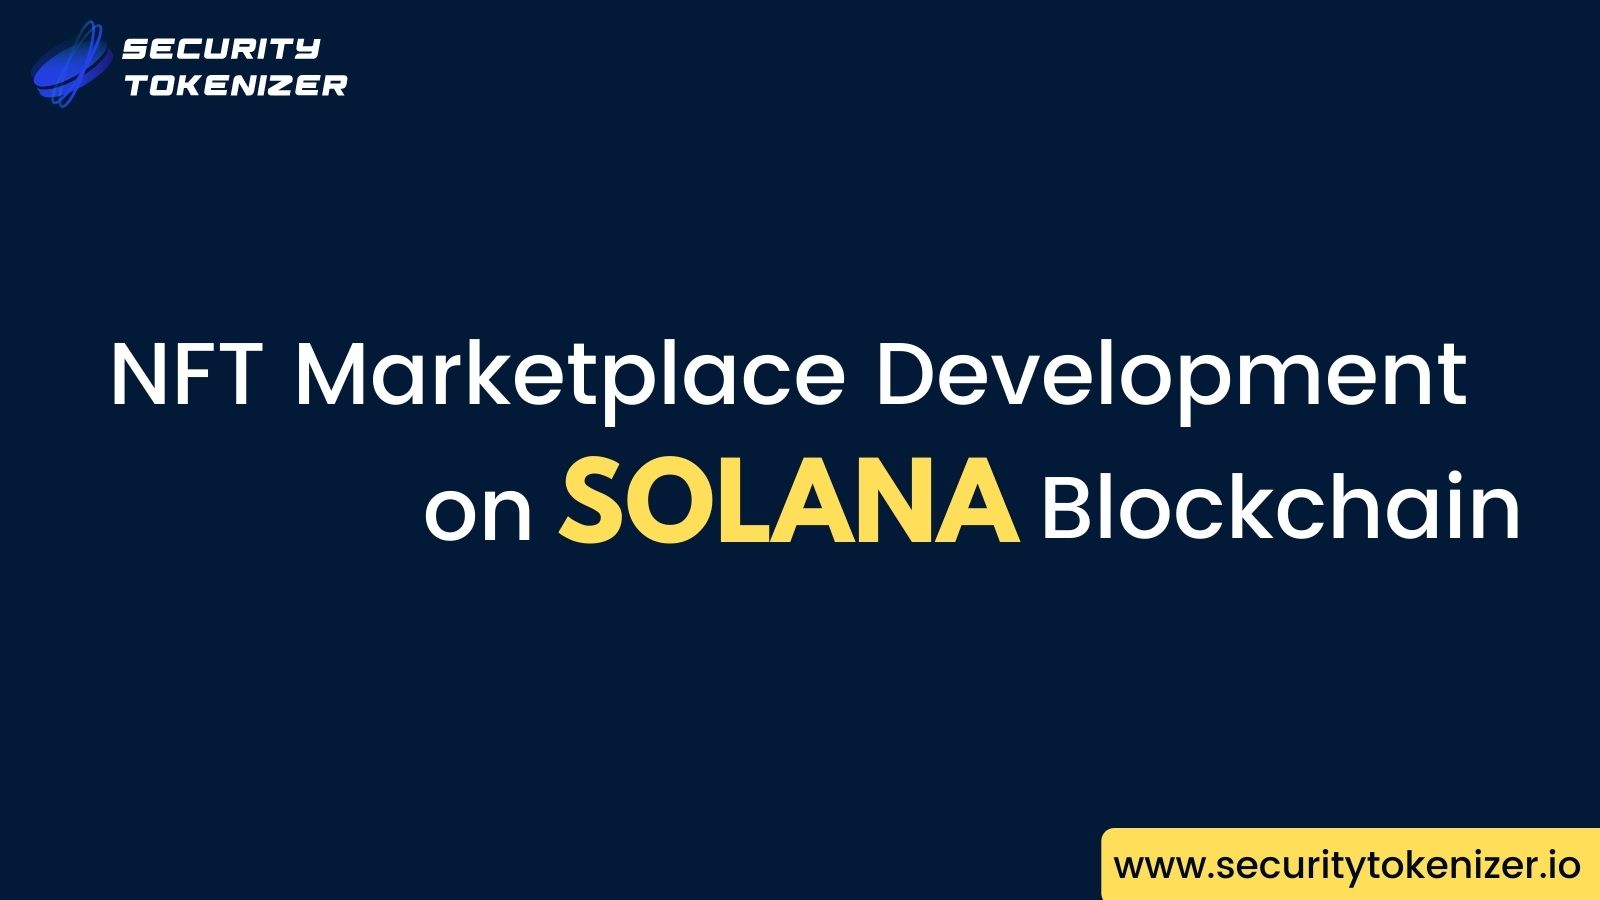 Article about Solana NFT Marketplace Development